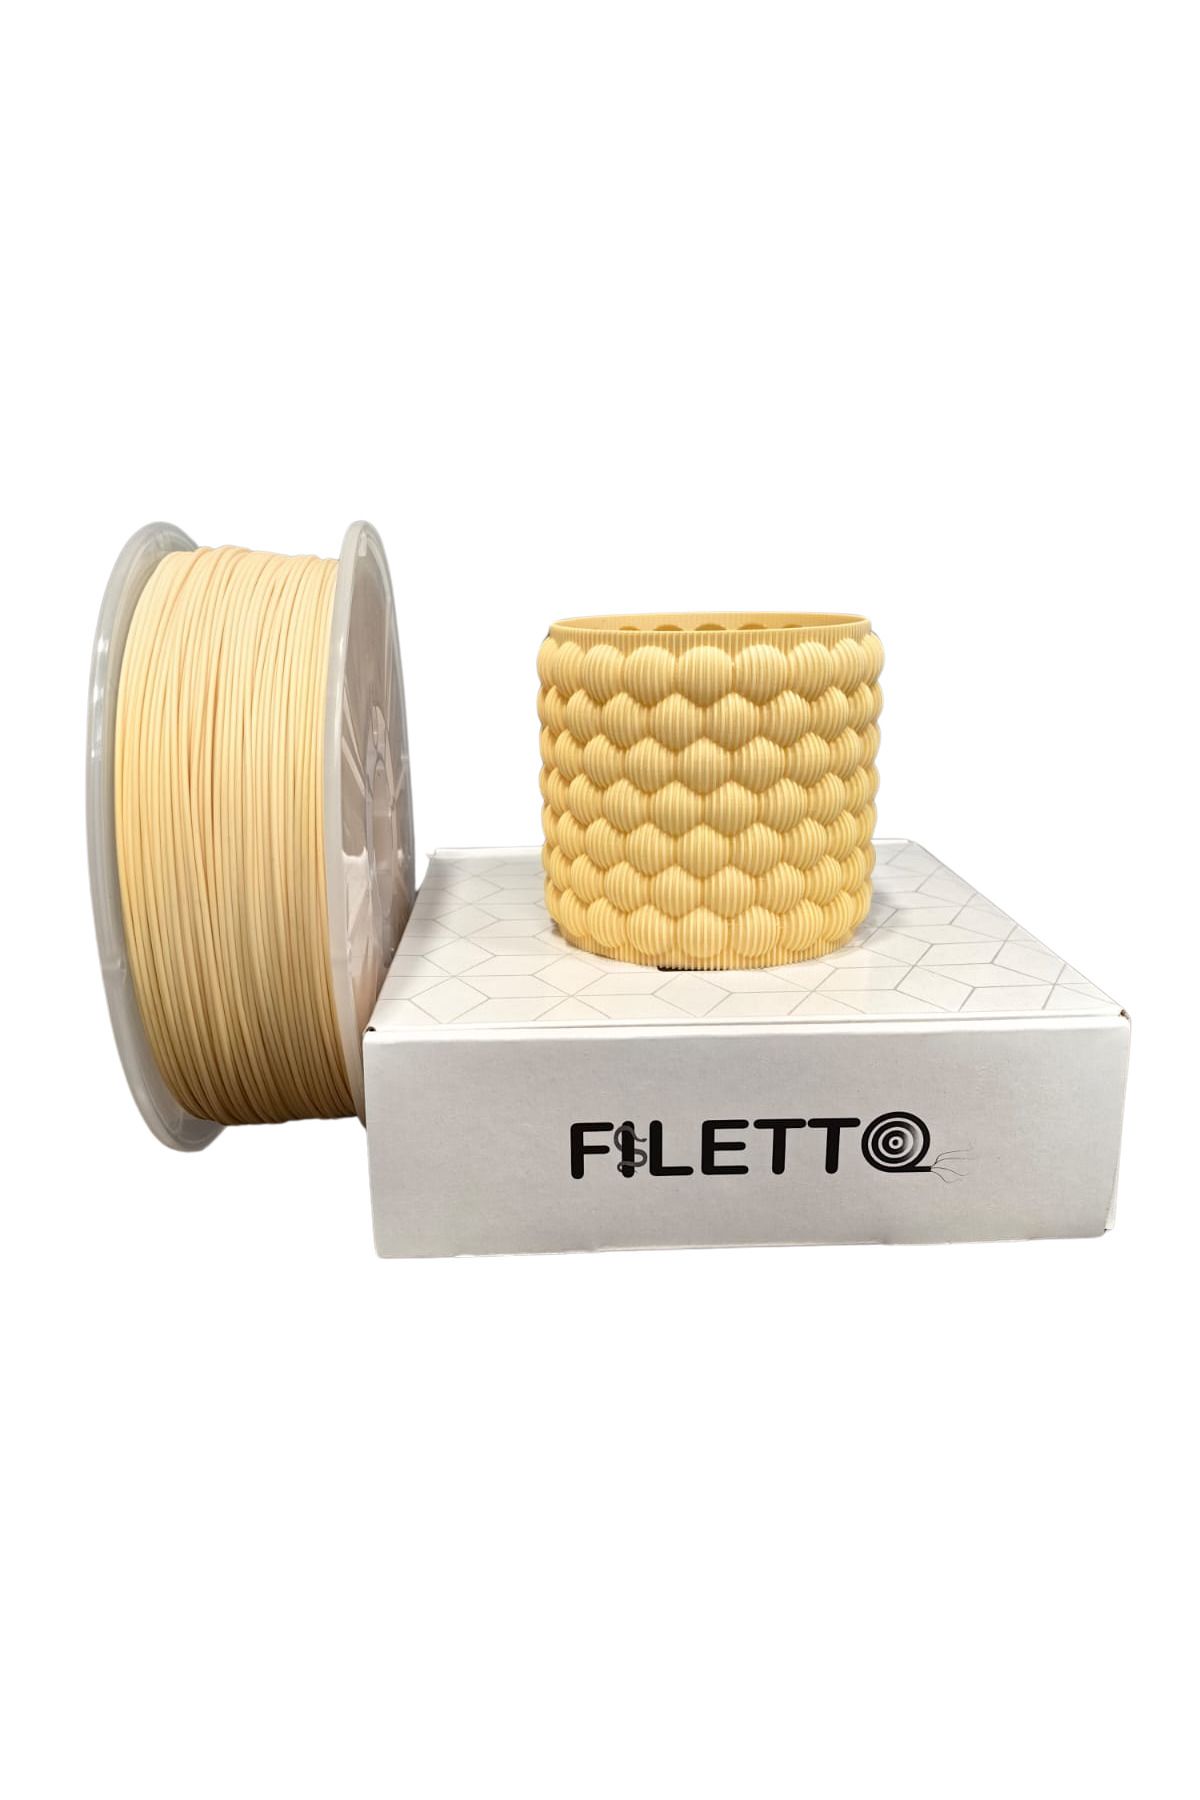 FİLETTO Filetto Pla+ Filament 1.75mm 1 KG - Bej